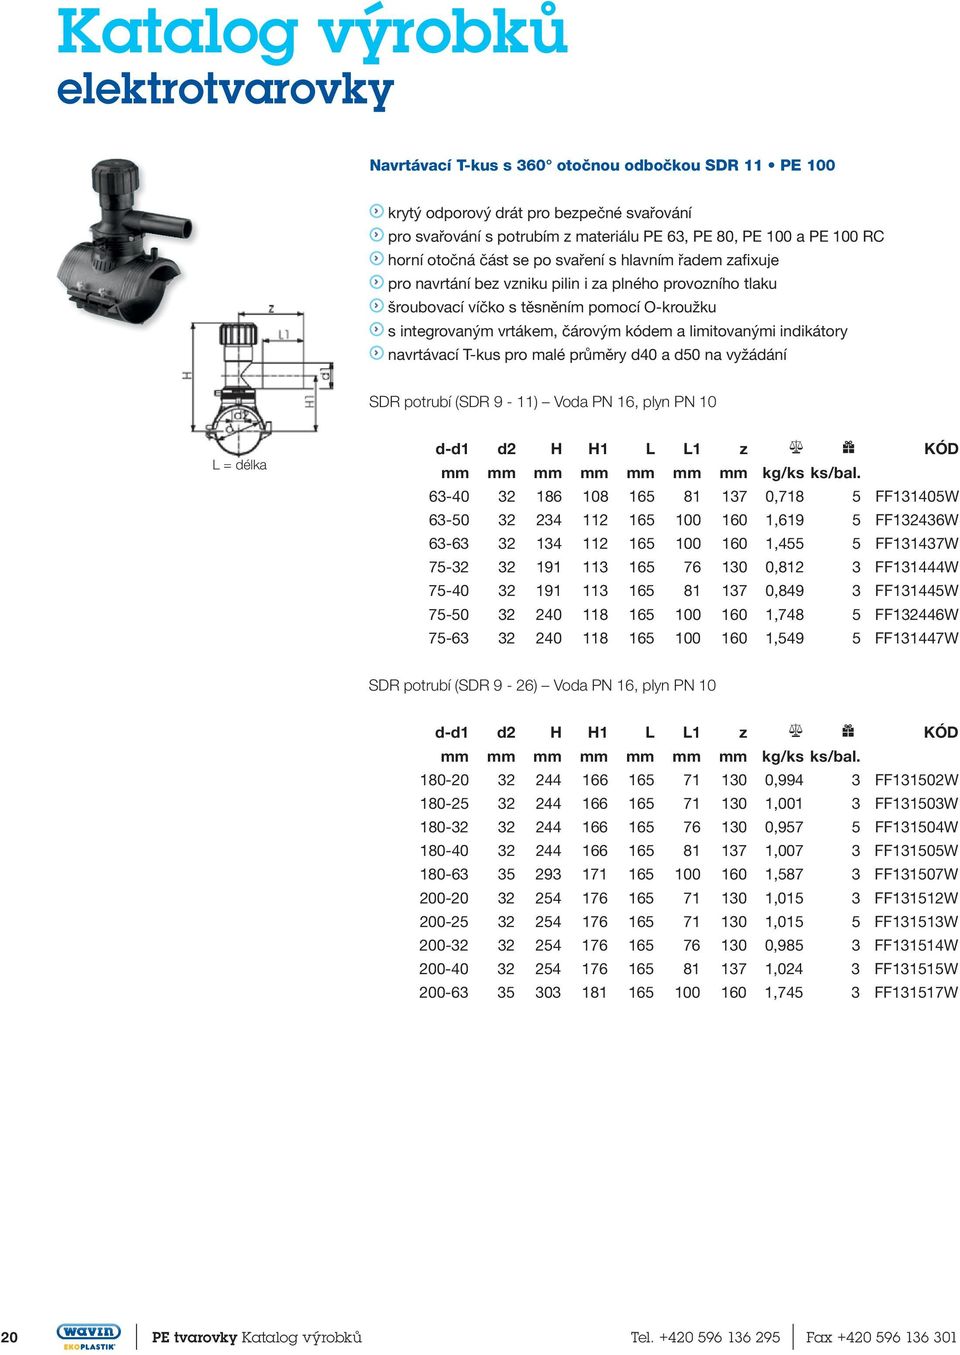 kódem.a limitovanými.indikátory..navrtávací.t-kus.pro.malé.průměry.d40.a d50.na vyžádání SDR potrubí (SDR 9-11) Voda PN 16, plyn PN 10 L = délka d-d1 d2 H H1 L L1 z kg/ks ks/bal.